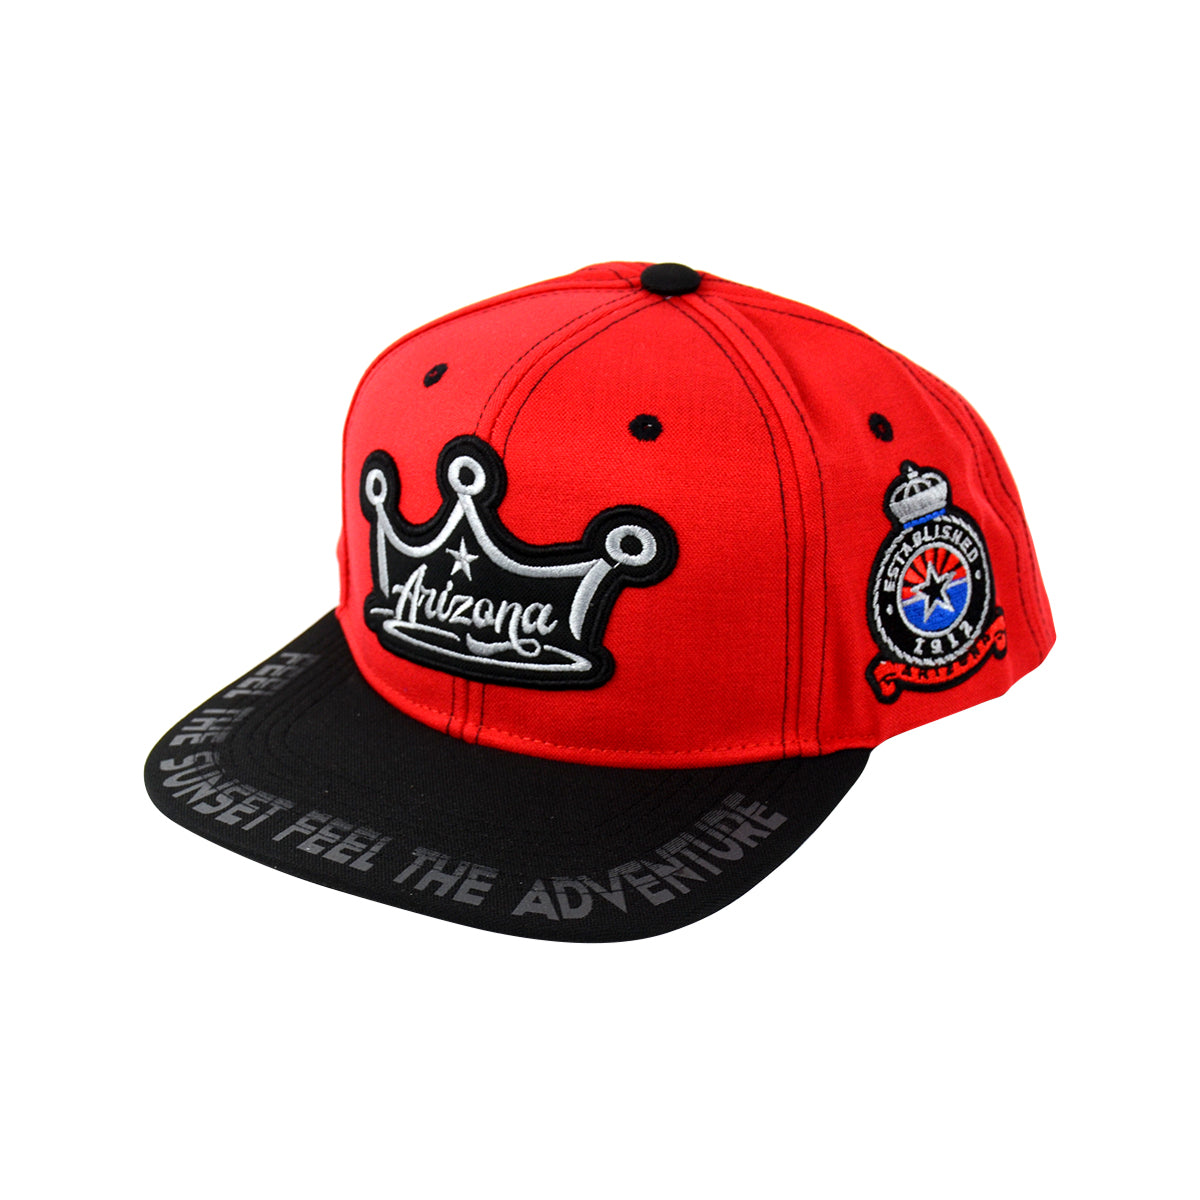 Snapback King Arizona Hat Embroidered